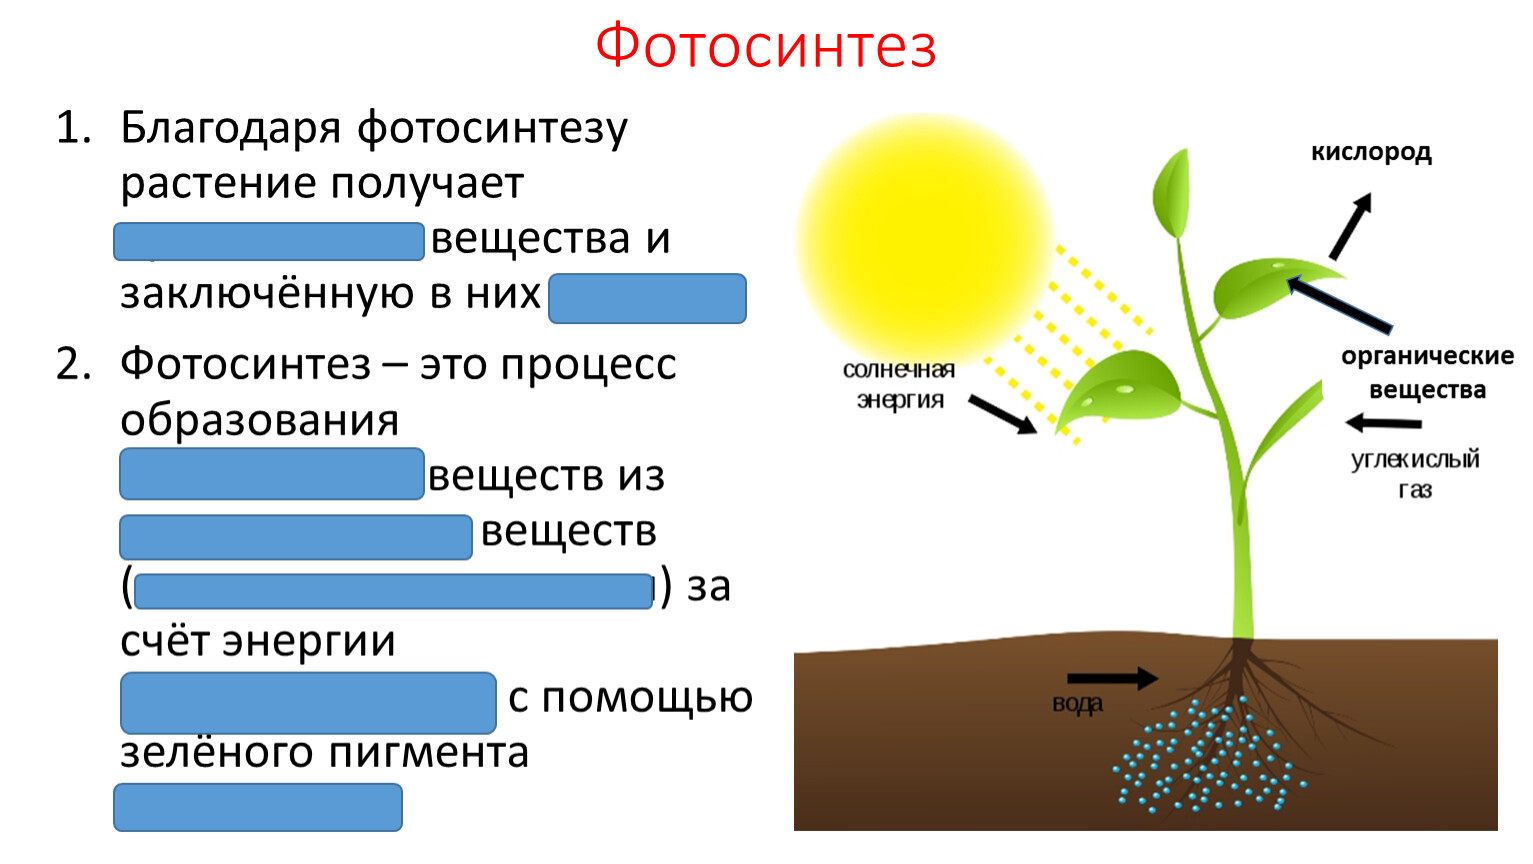 Вопросы по фотосинтезу 6 класс. Фотосинтез класс 6 класс. Фотосинтез 5-6 класс. Фотосинтез органические вещества. Солнечная энергия фотосинтез.